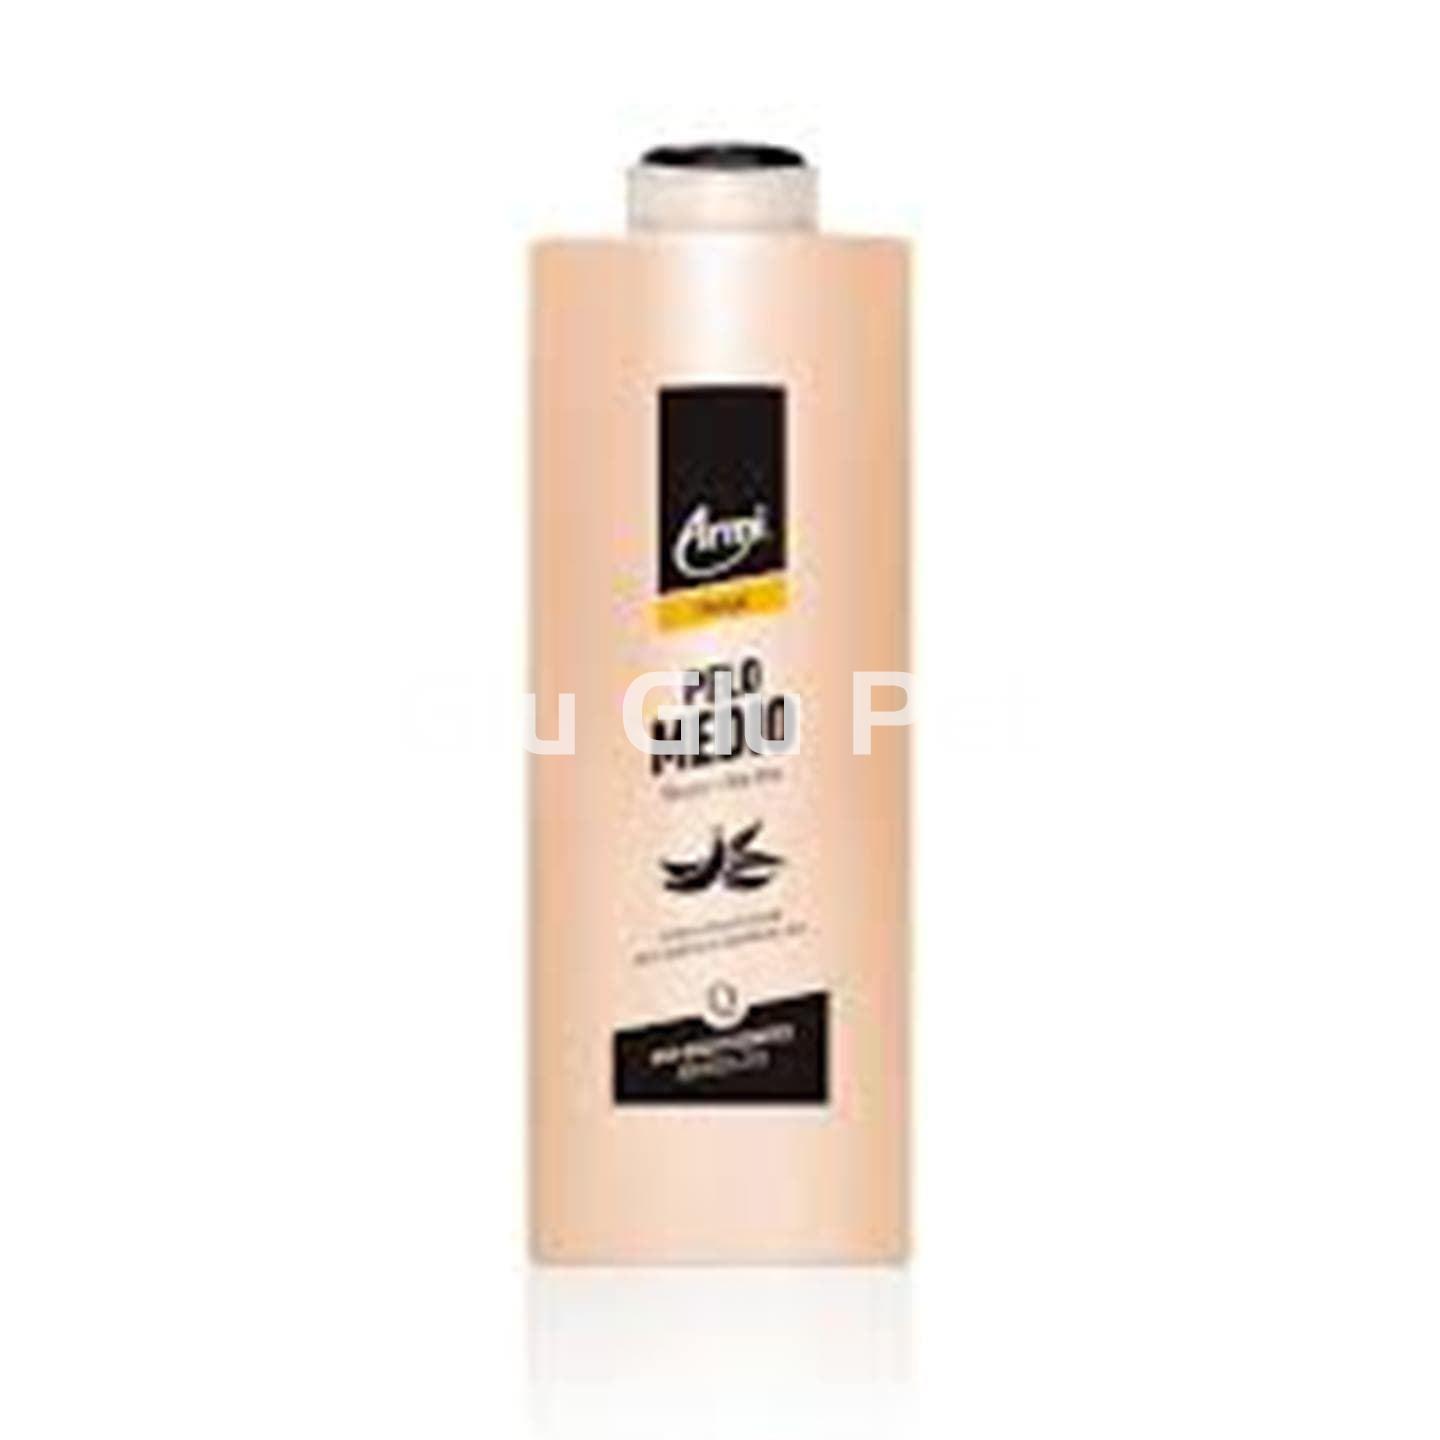 Armi shampoo medium hair 225ml. - Image 1